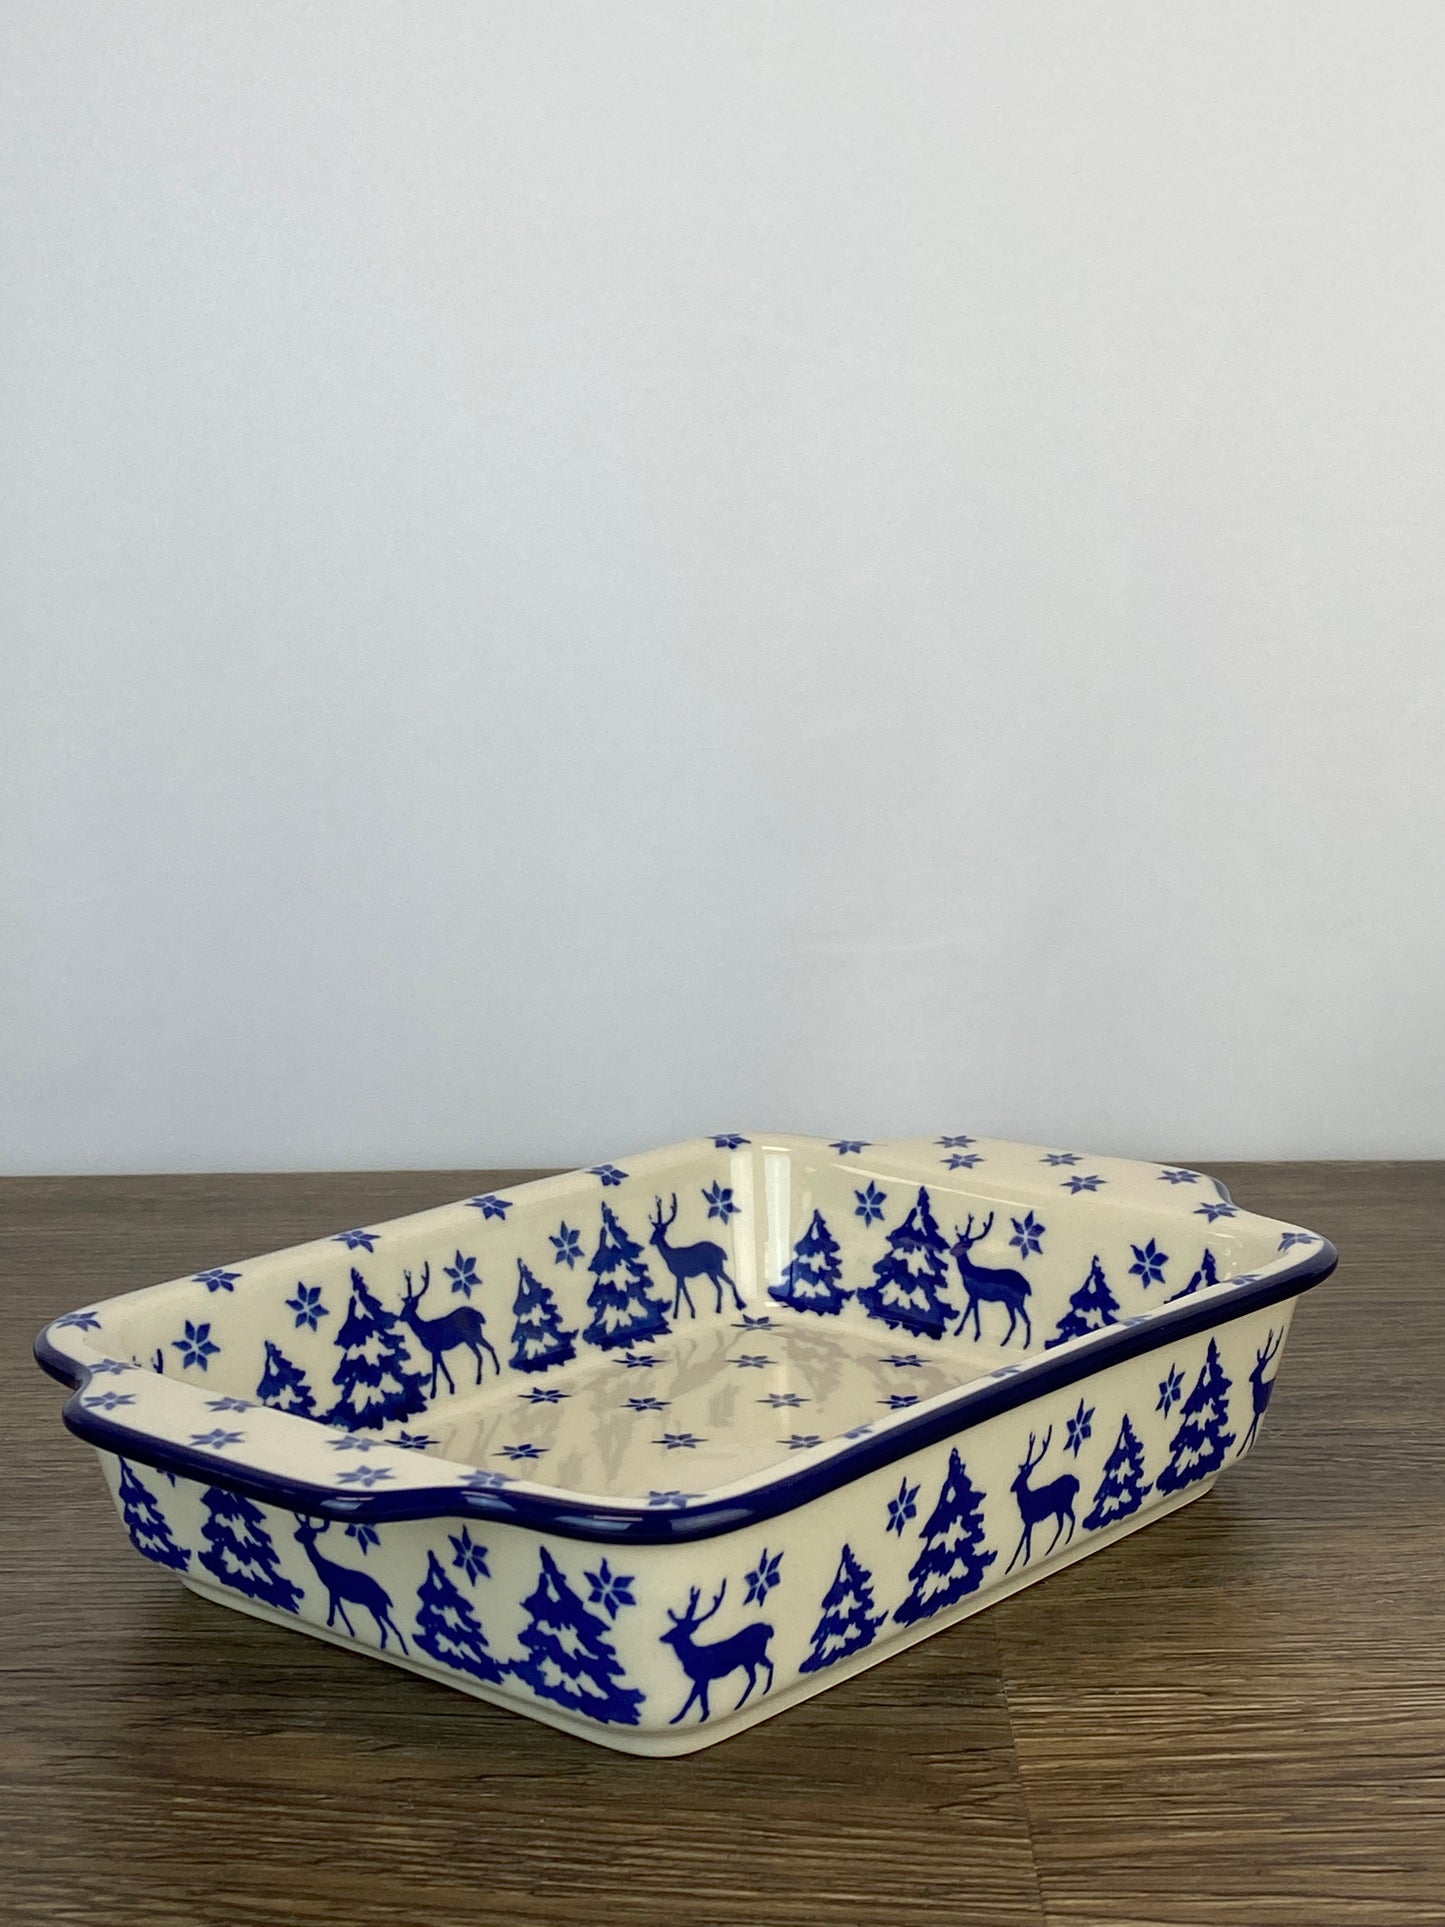 Rectangular Baker with Handles - Shape A84 - Pattern 1931